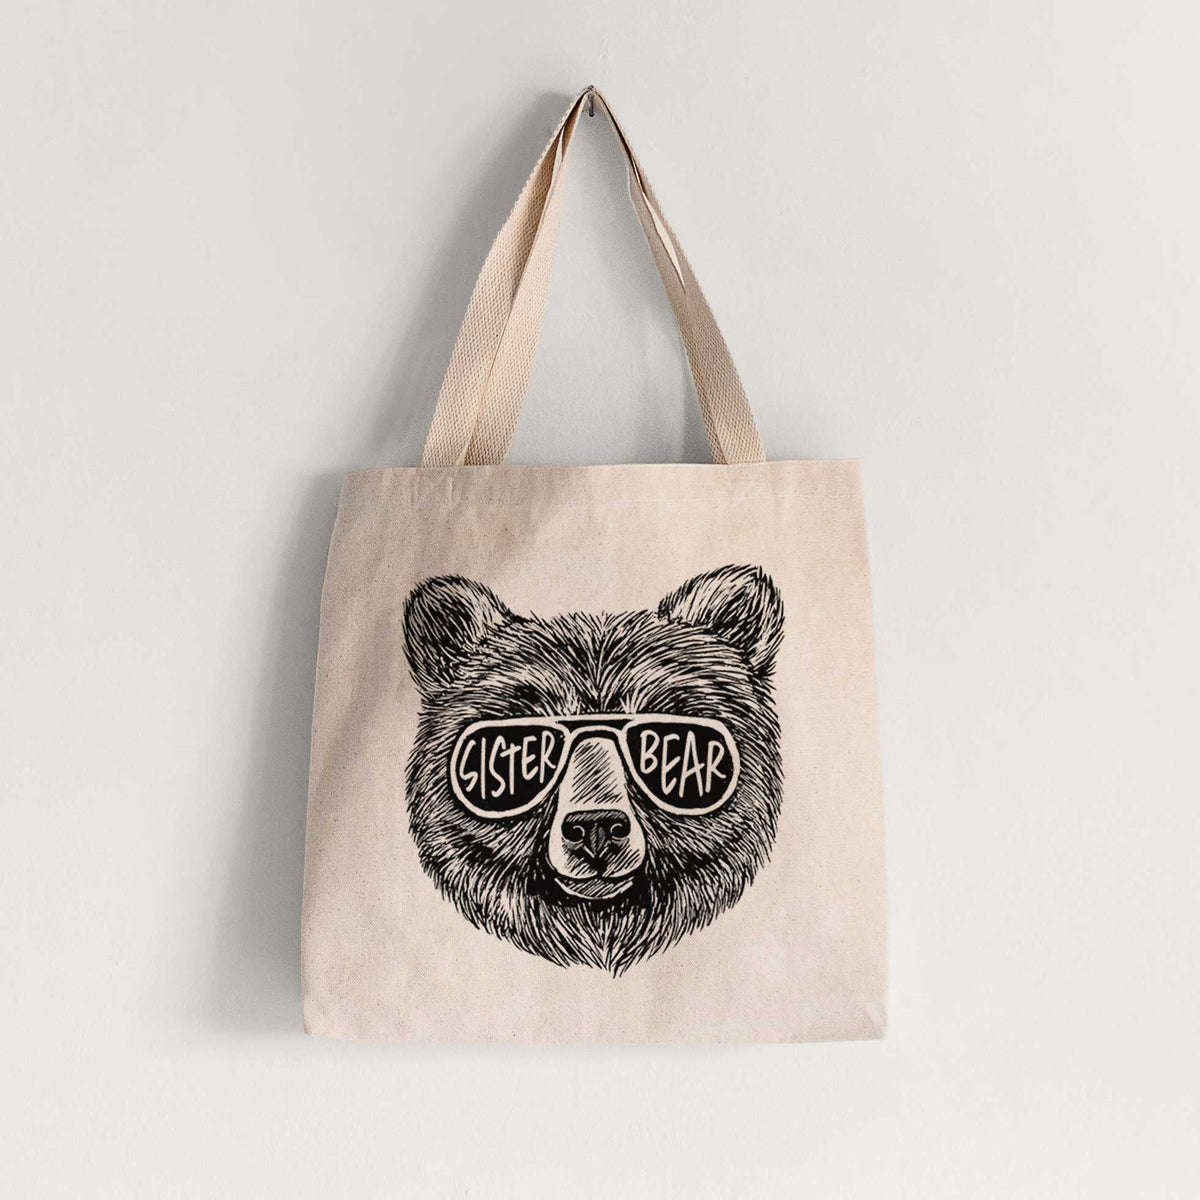 Sister Bear - Tote Bag